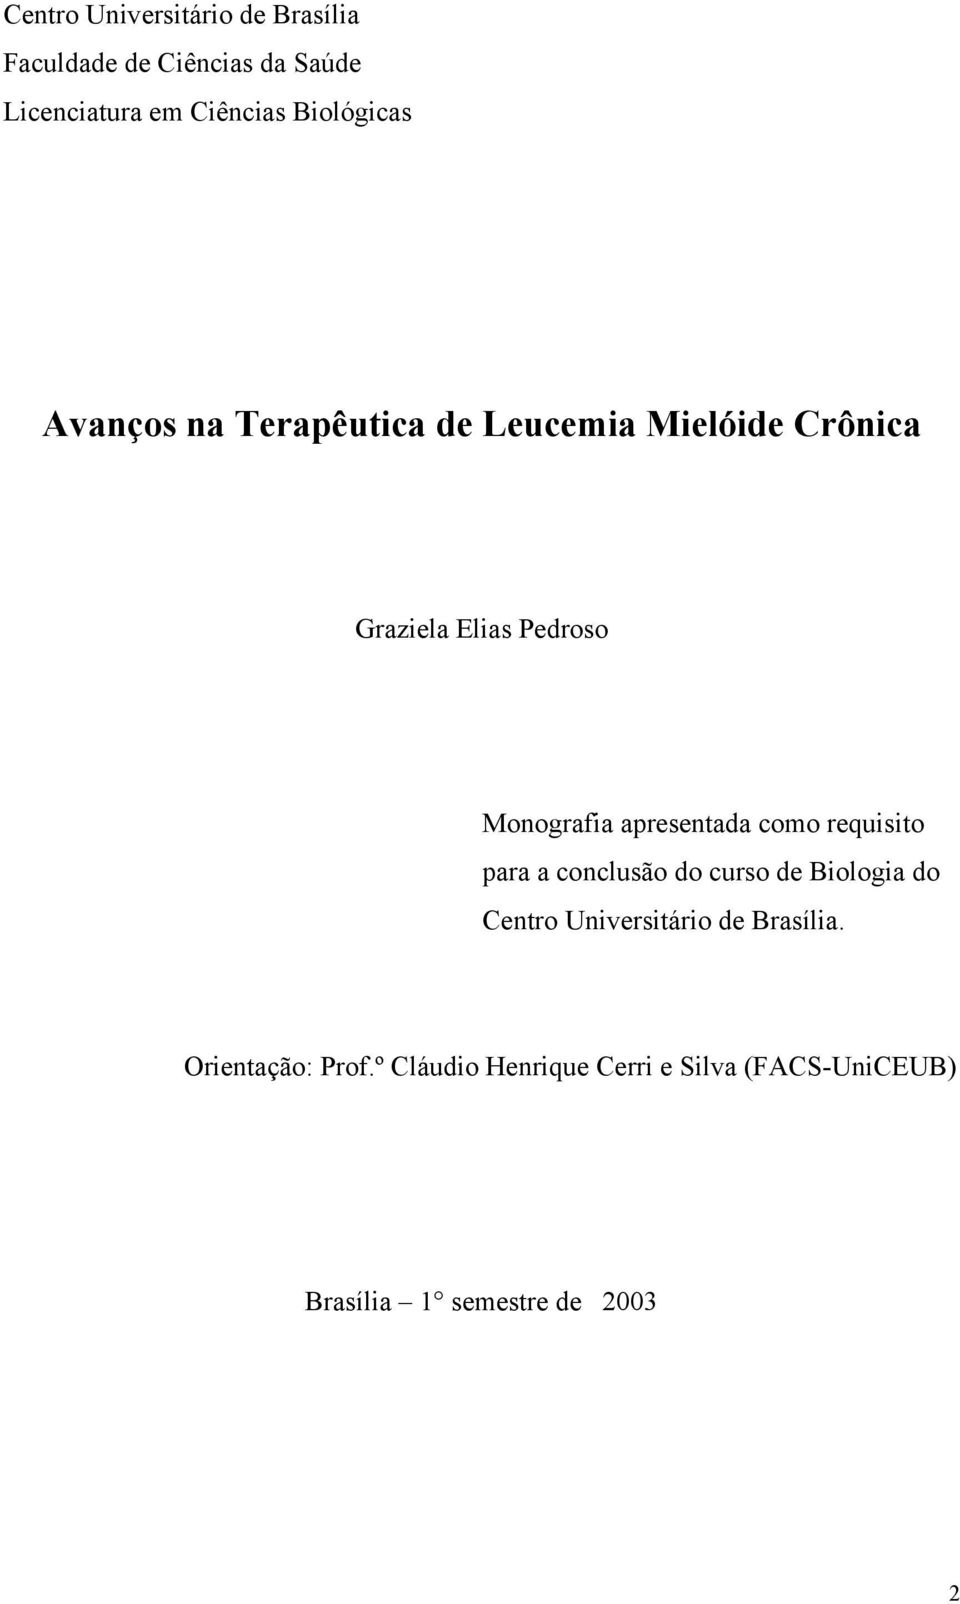 Monografia apresentada como requisito para a conclusão do curso de Biologia do Centro